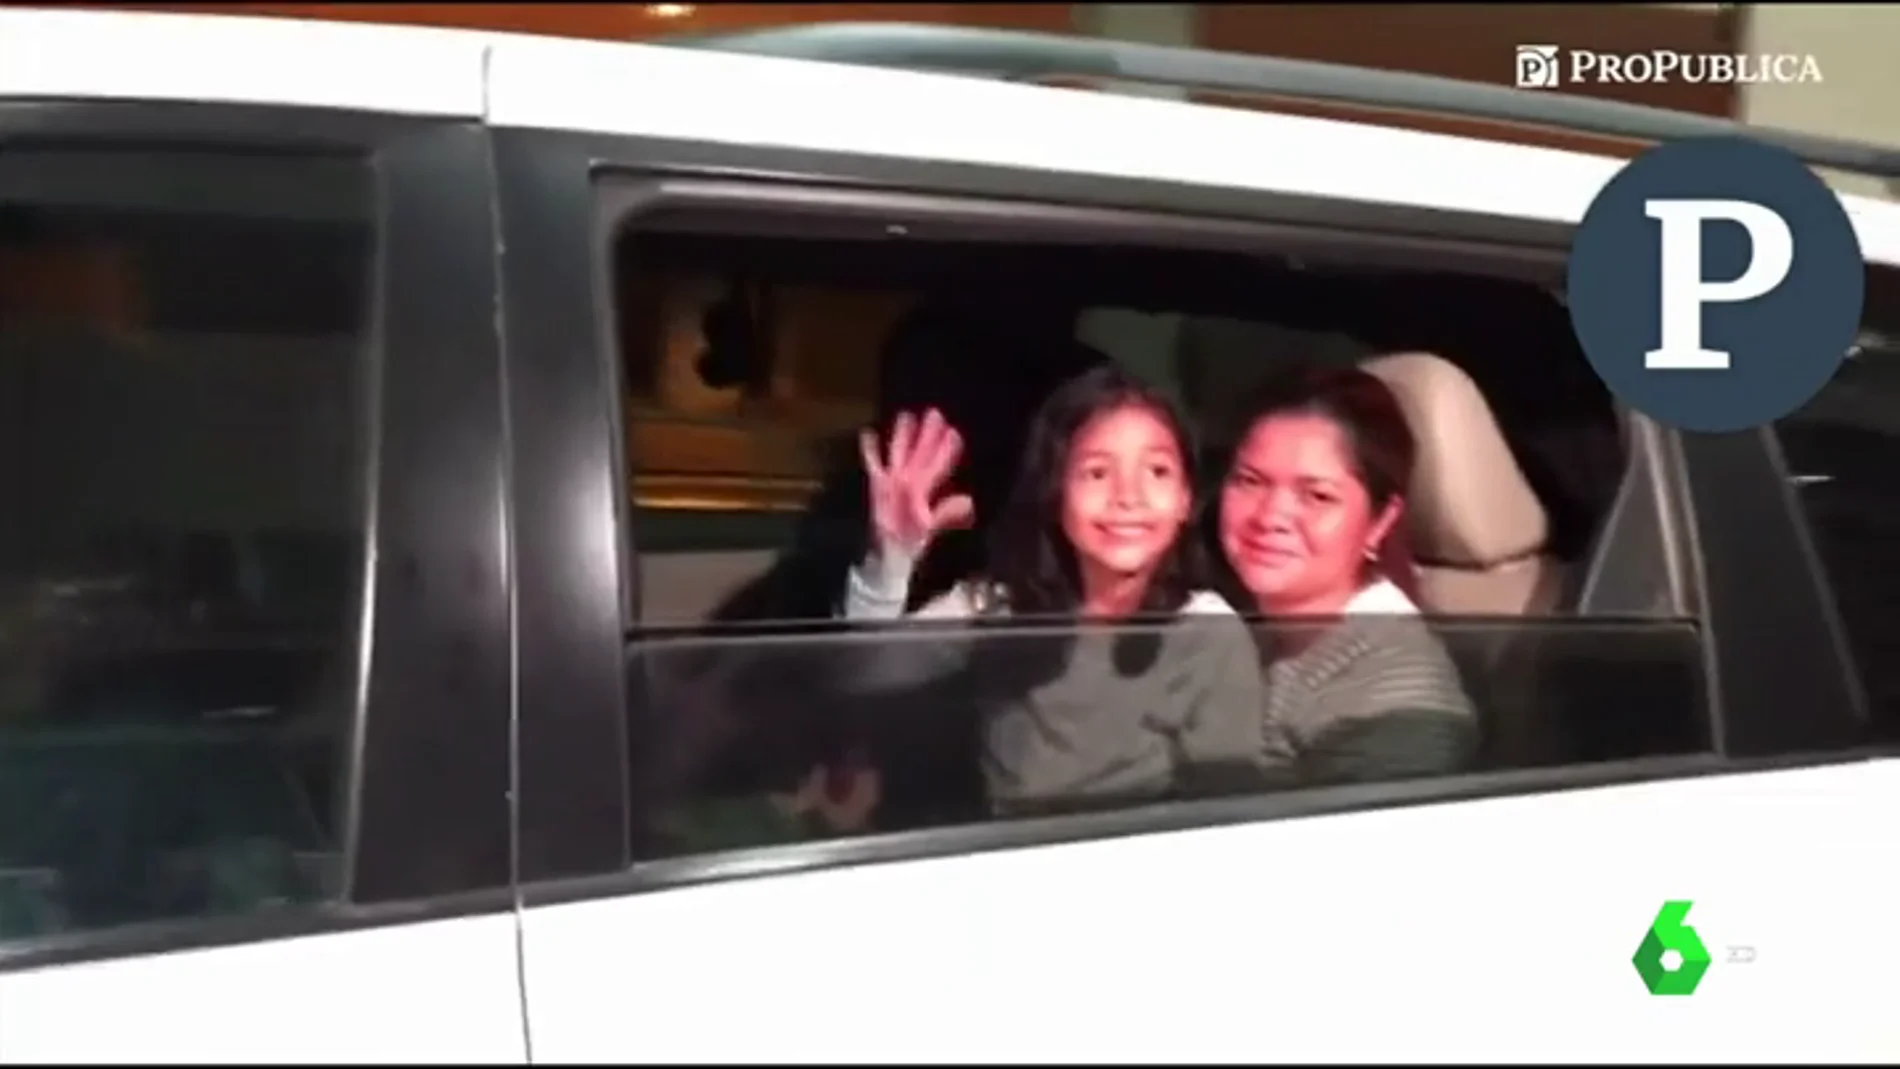 Entre aplausos y sonrisas: el emotivo reencuentro de una madre y su hija separadas por las políticas migratorias de Trump